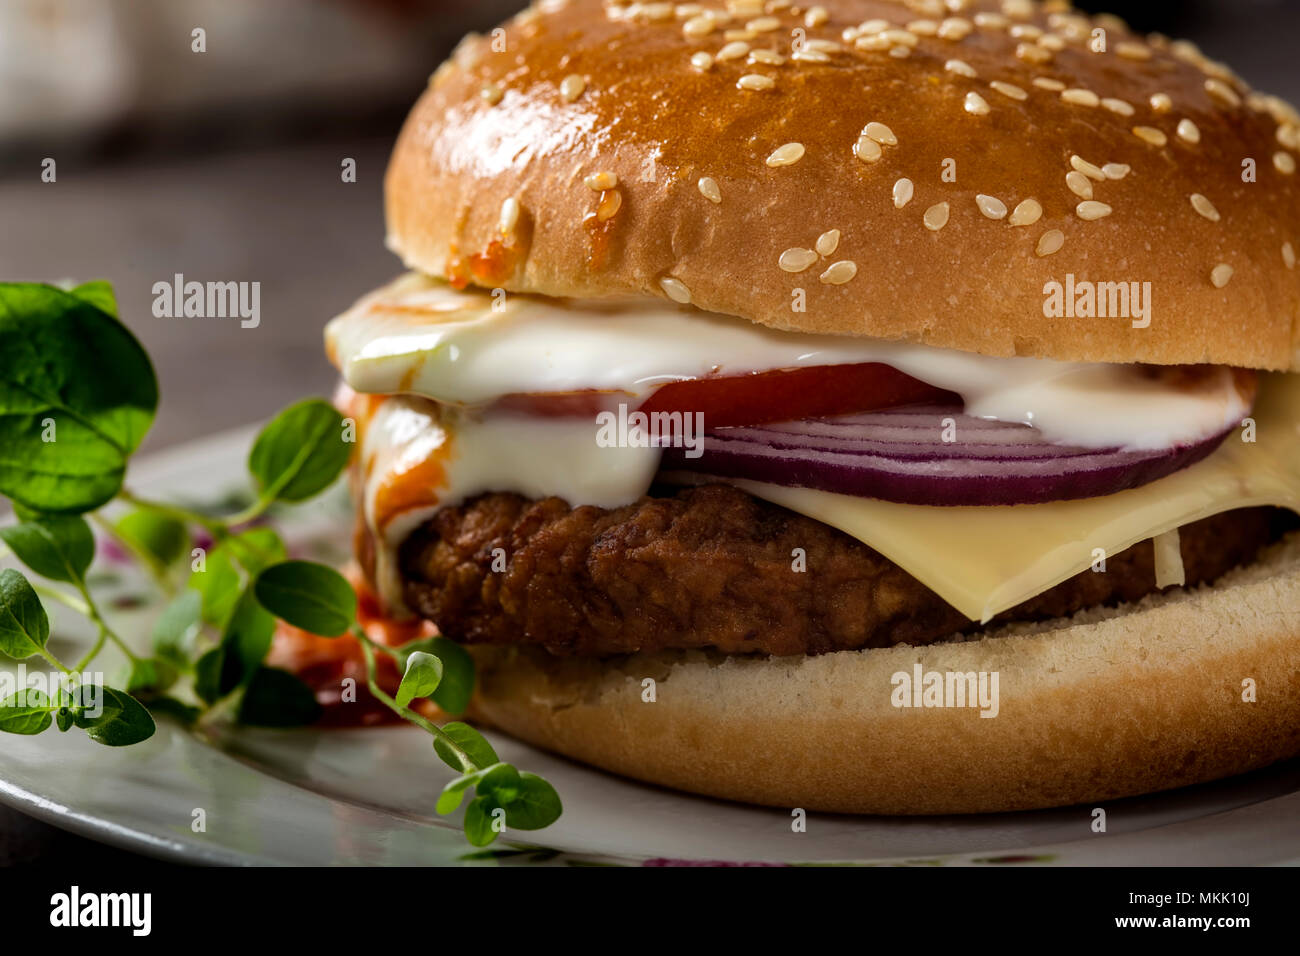 Nahaufnahme von einem Cheeseburger mit Tomaten und Mayonnaise Sauce auf dem Teller mit grünen Oregano Blätter Stockfoto